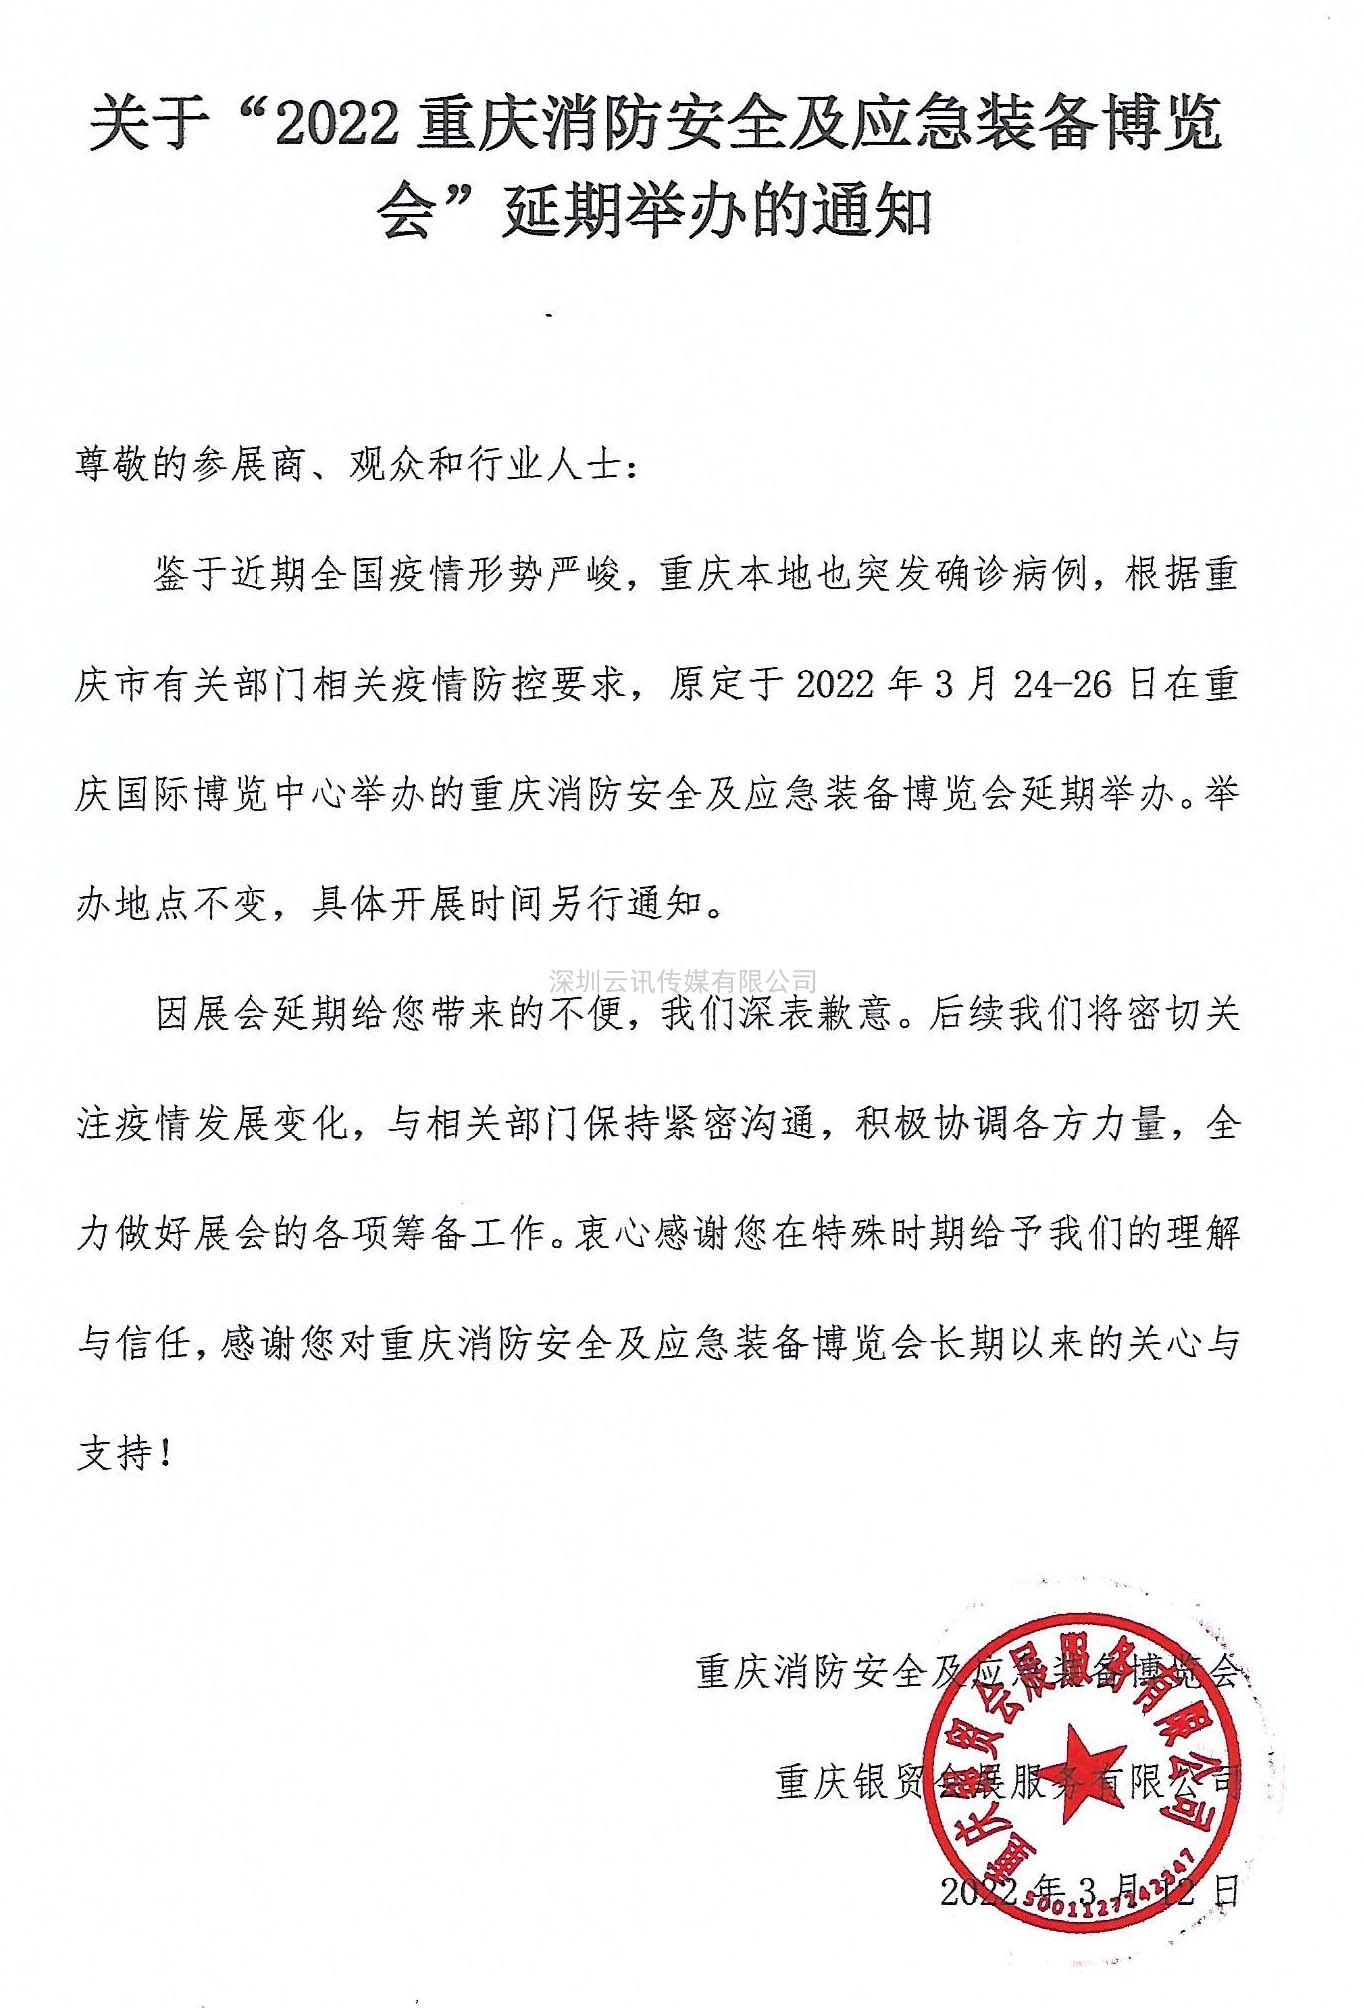 关于“2022重庆消防安全及应急装备博览会”延期举办的通知